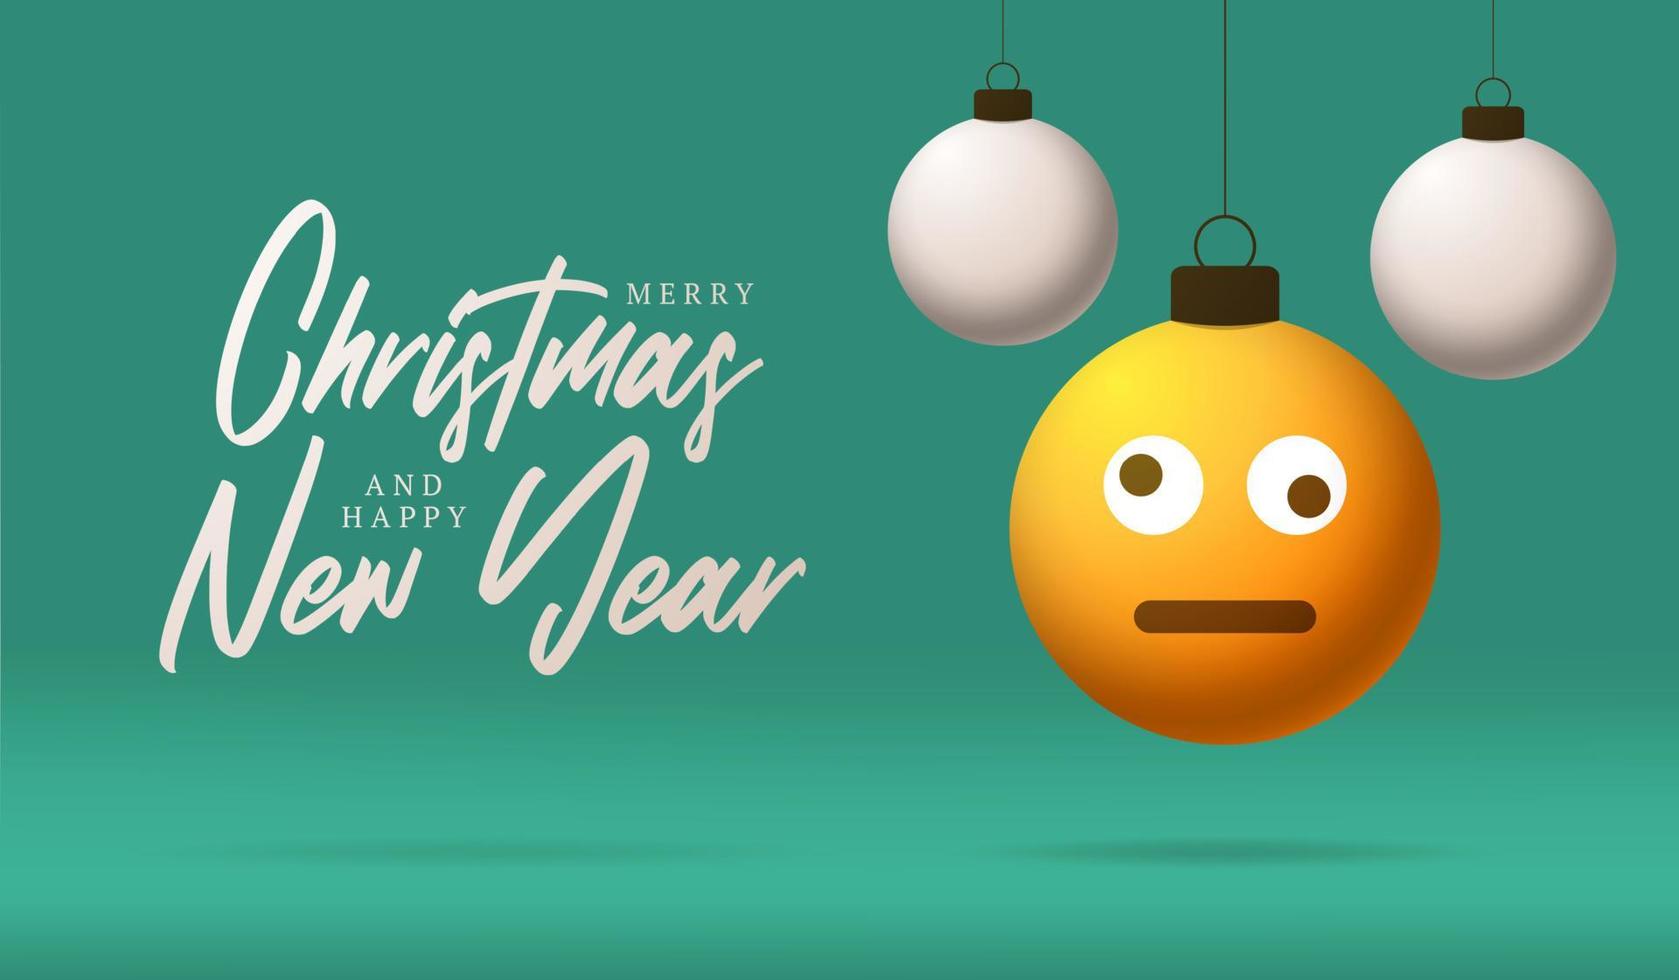 tarjeta de feliz navidad con mareada sonrisa confundida emoji cara. Ilustración de vector de estilo plano con letras de Navidad y emoción en bola de Navidad colgando de hilo en el fondo